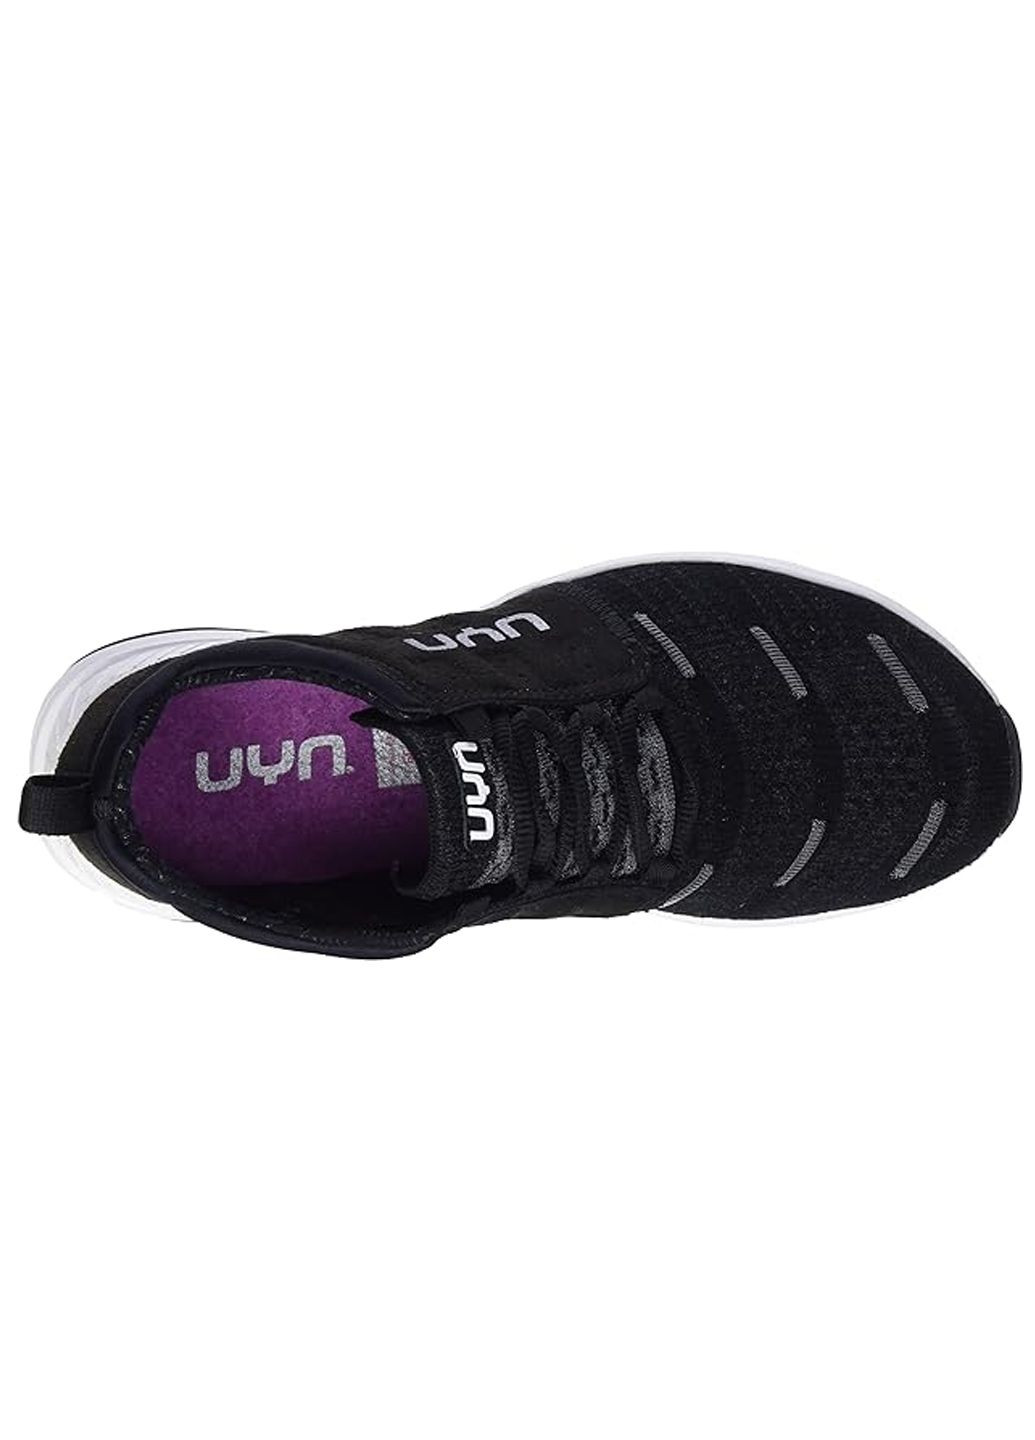 Цветные кроссовки женские UYN Air Dual Tune G035 Anthracite/Black